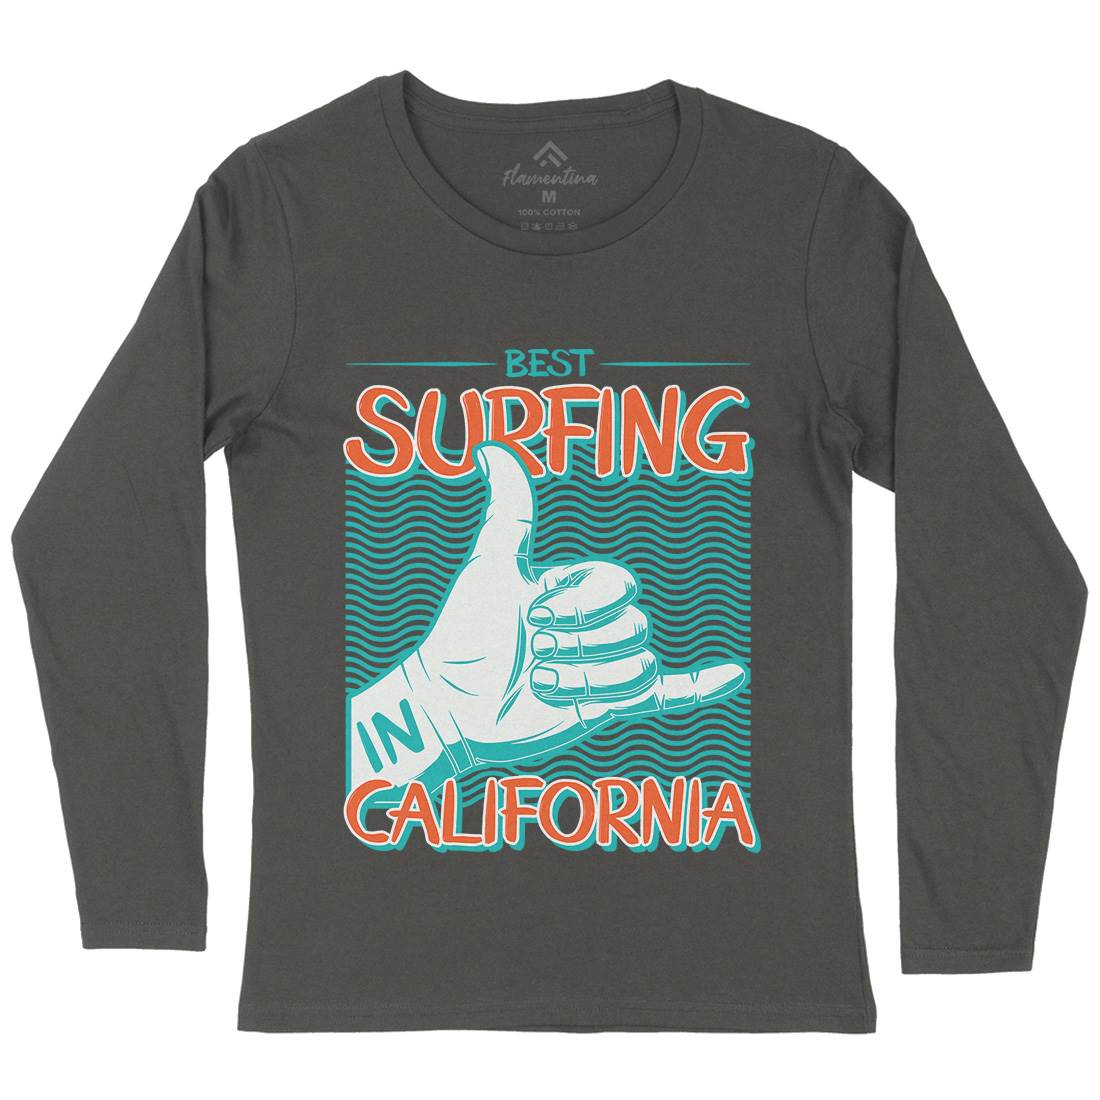 Best Surfing Womens Long Sleeve T-Shirt Surf D908